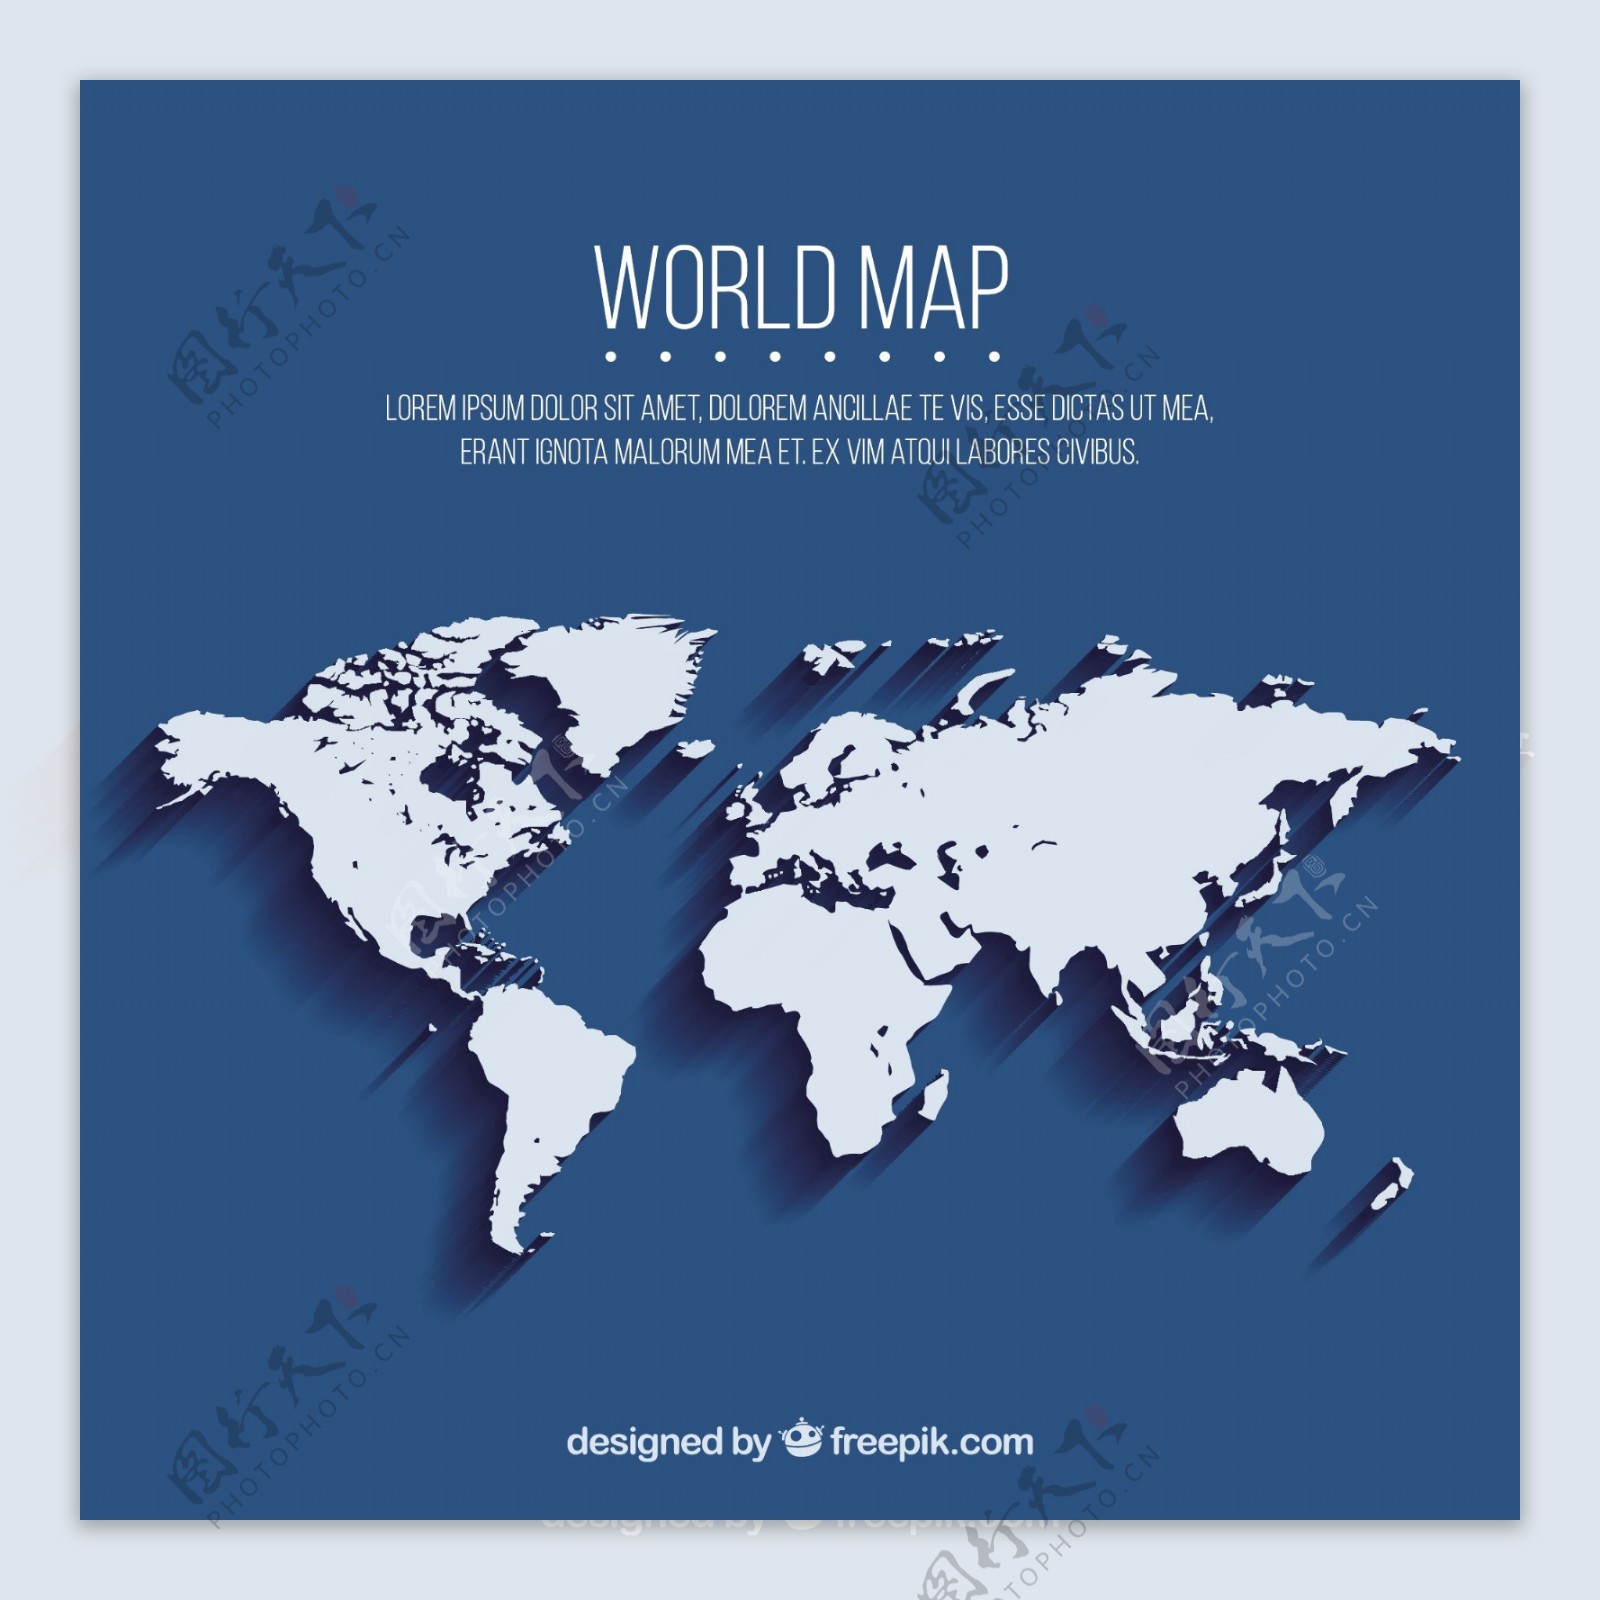 蓝色背景与世界地图